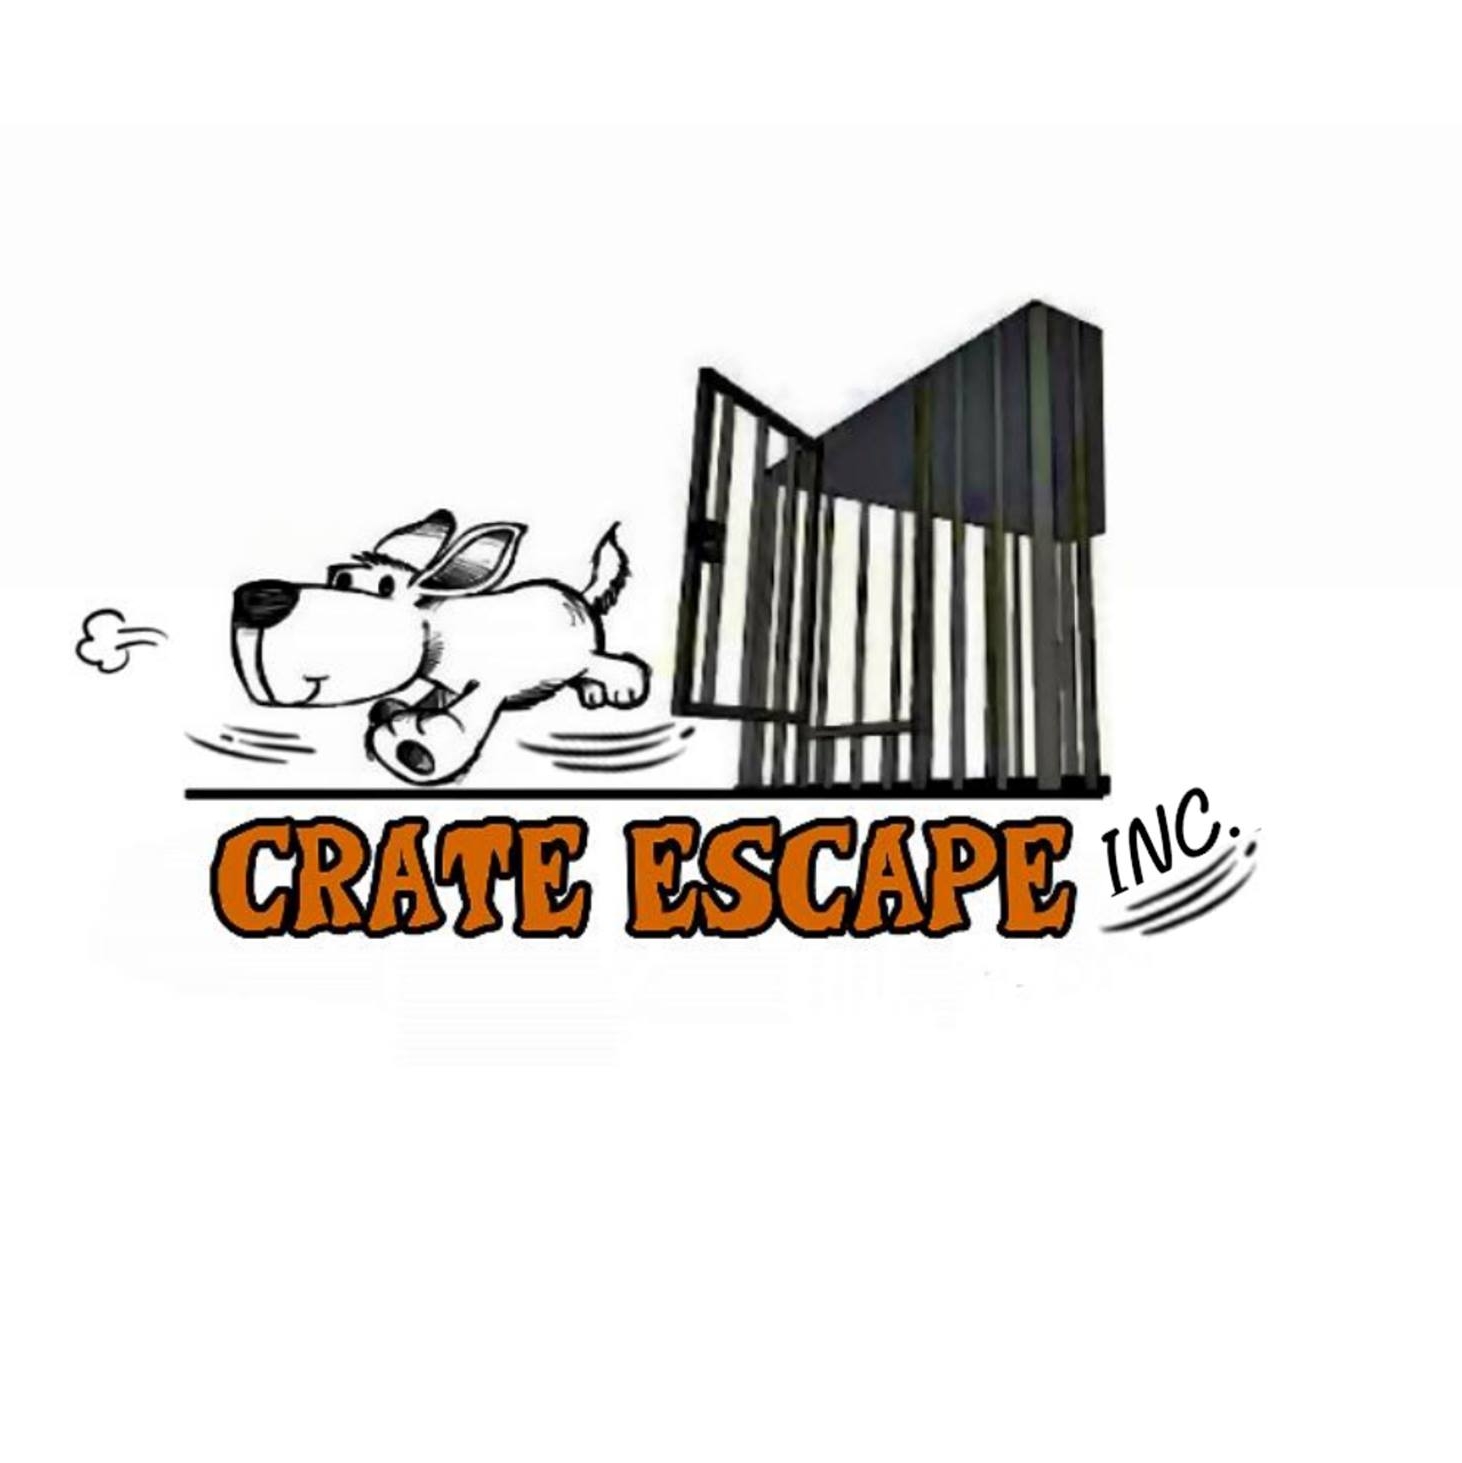 Crate Escape Rescue Inc logo